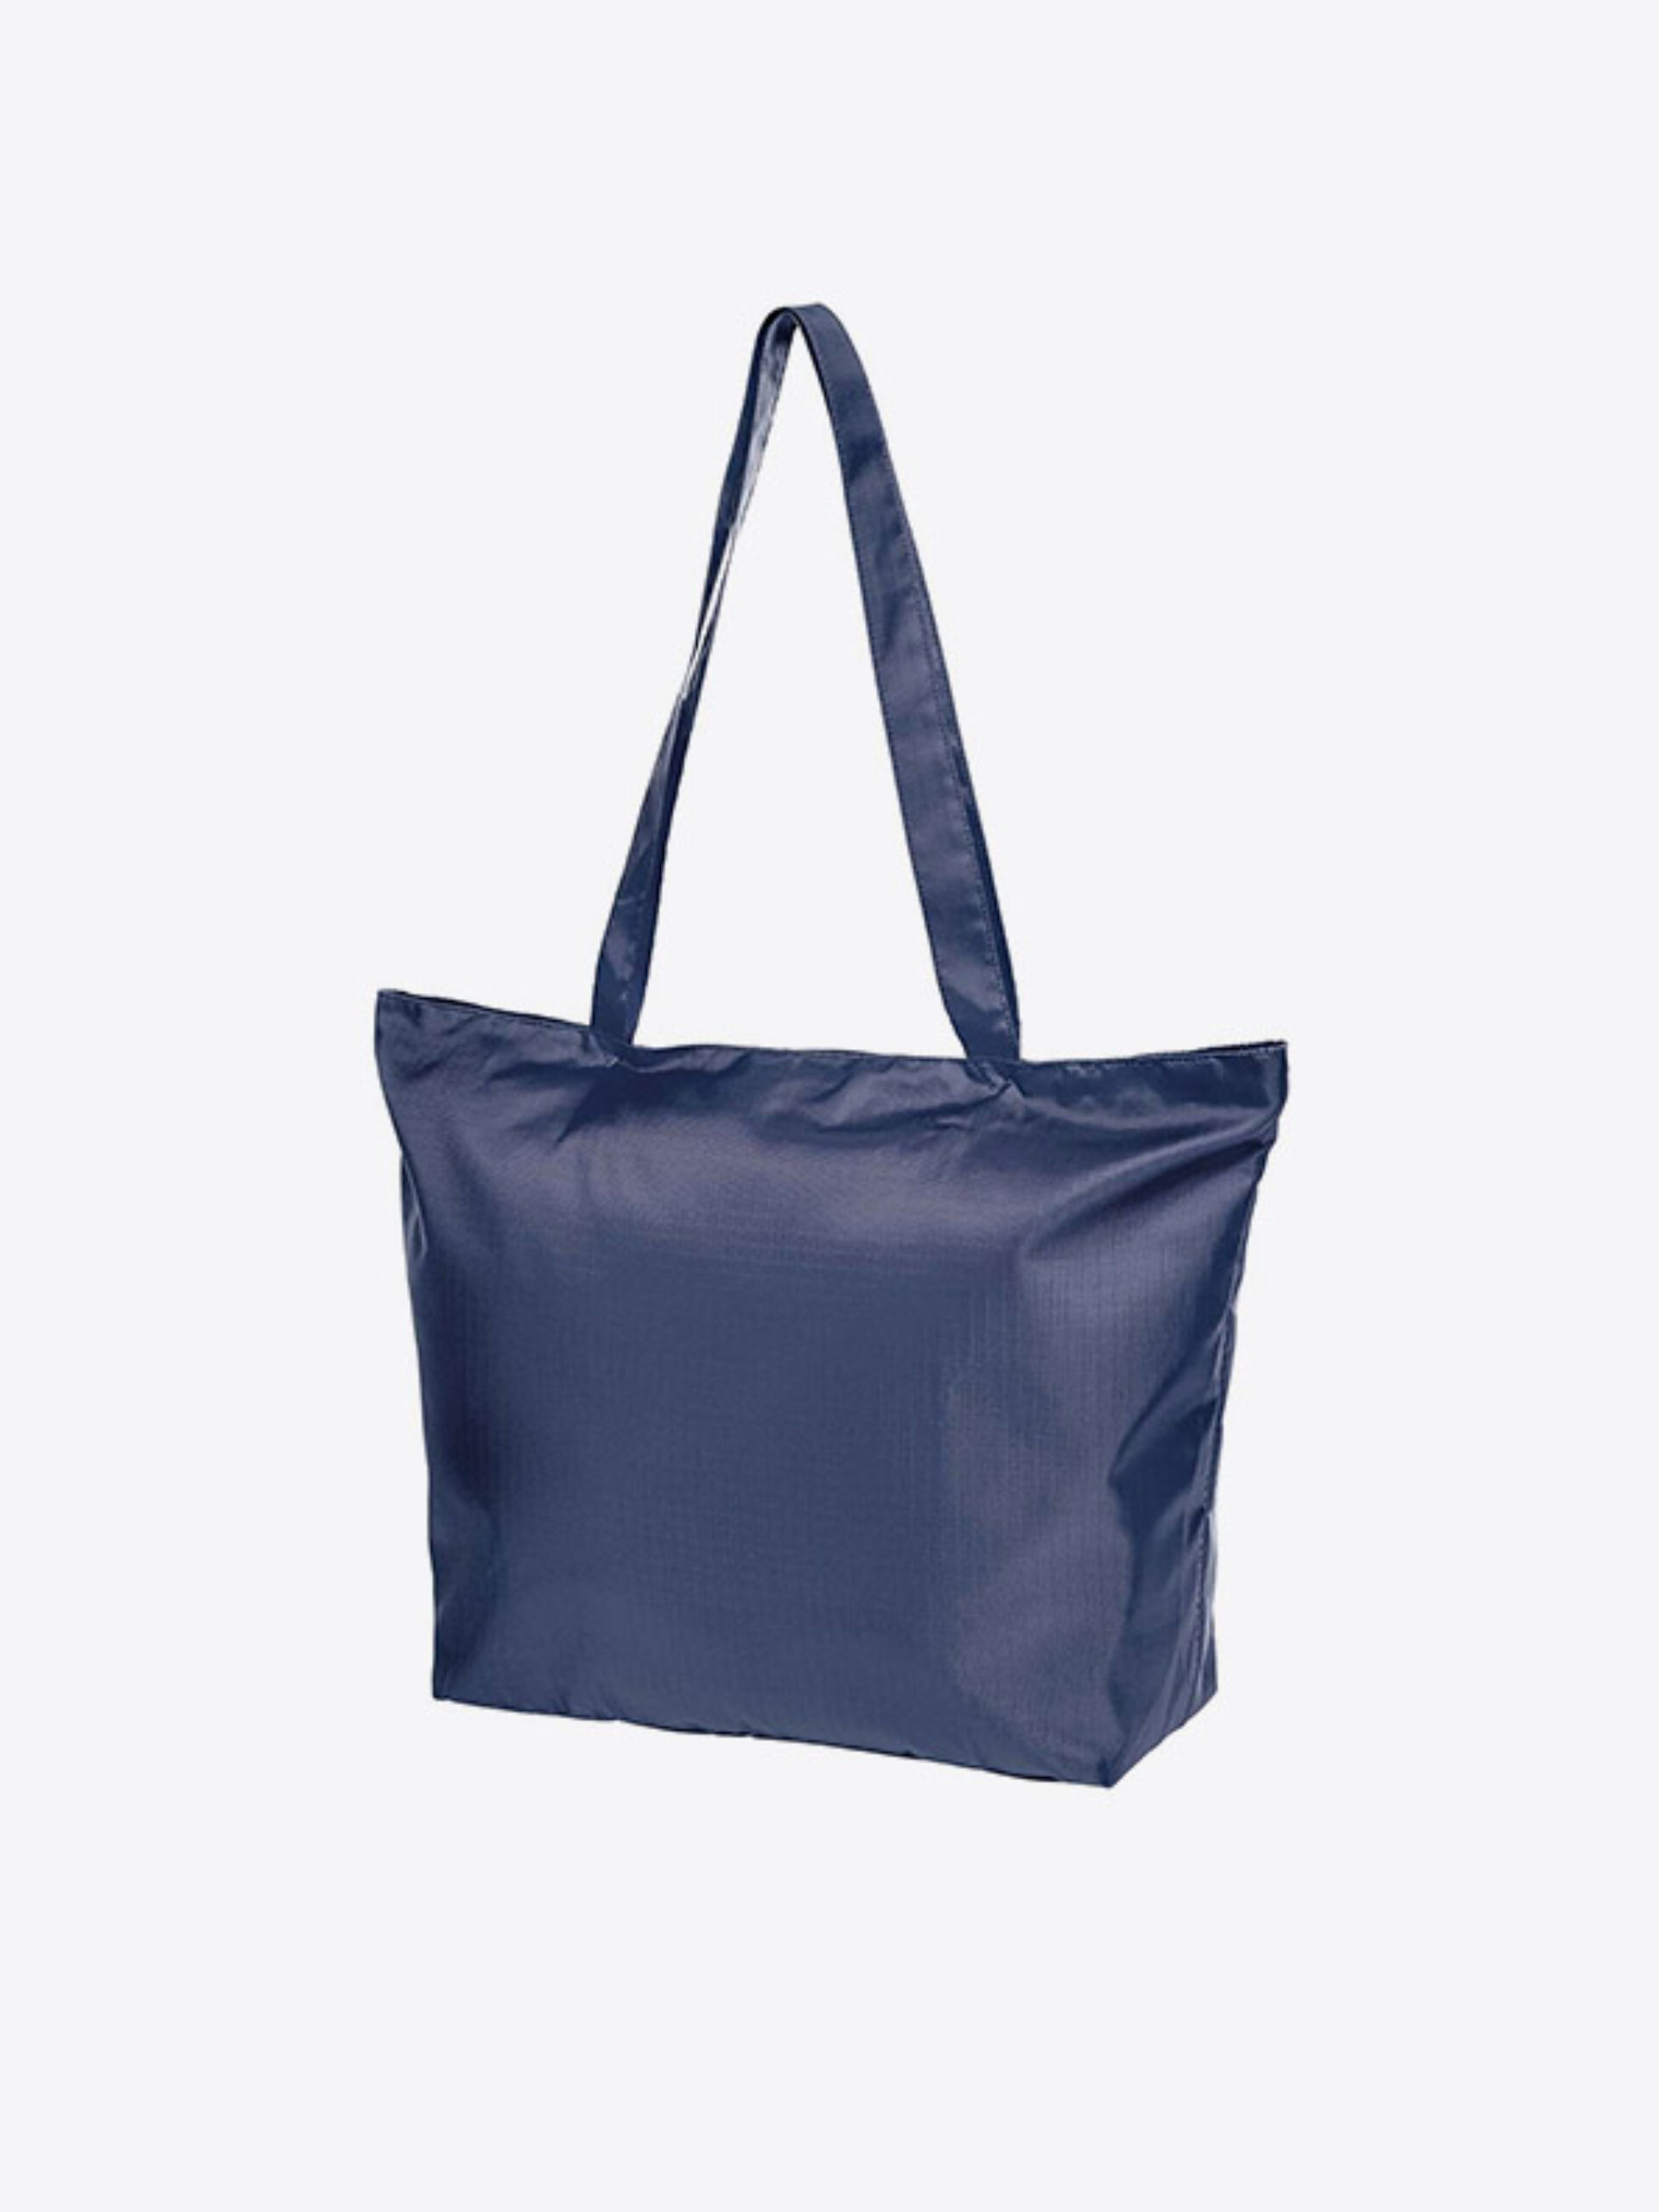 Faltbare Tasche Easy Mit Logo Bedrucken Reissverschluss Zusatztasche Reisetasche Polyester Marine